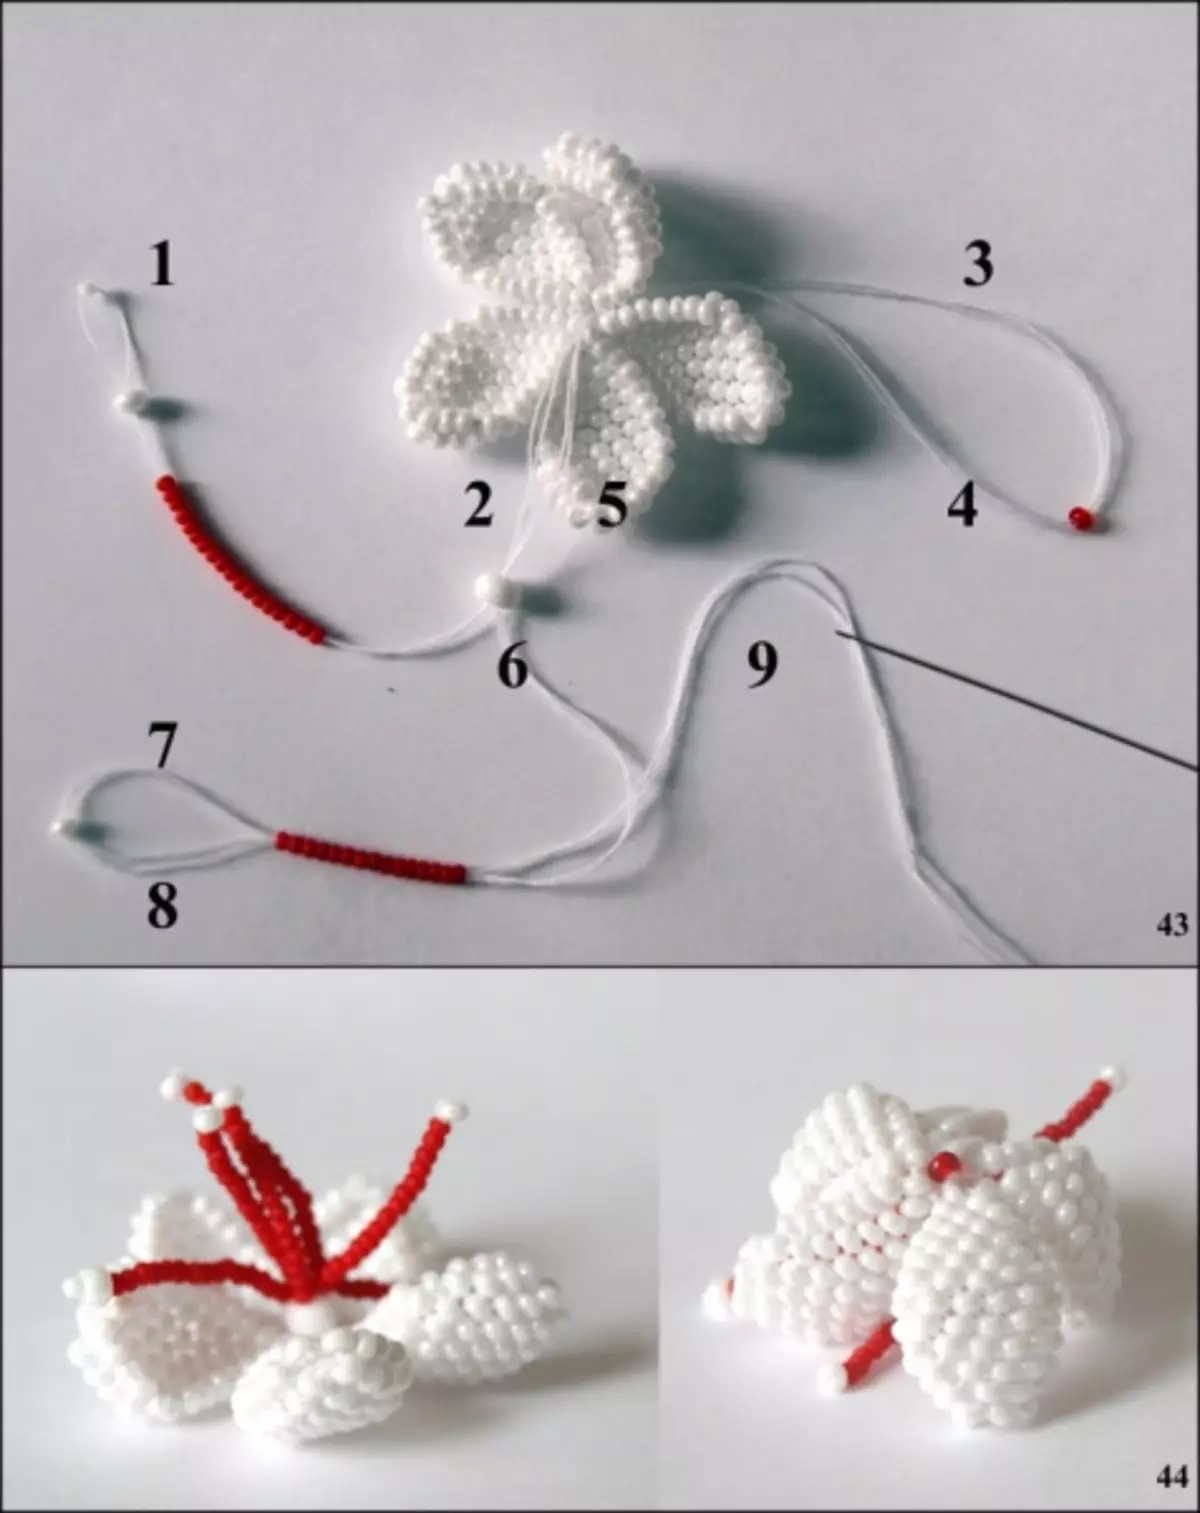 Fuchsia from Beads. Master Class Weaving եւ վիդեո սխեմաներ